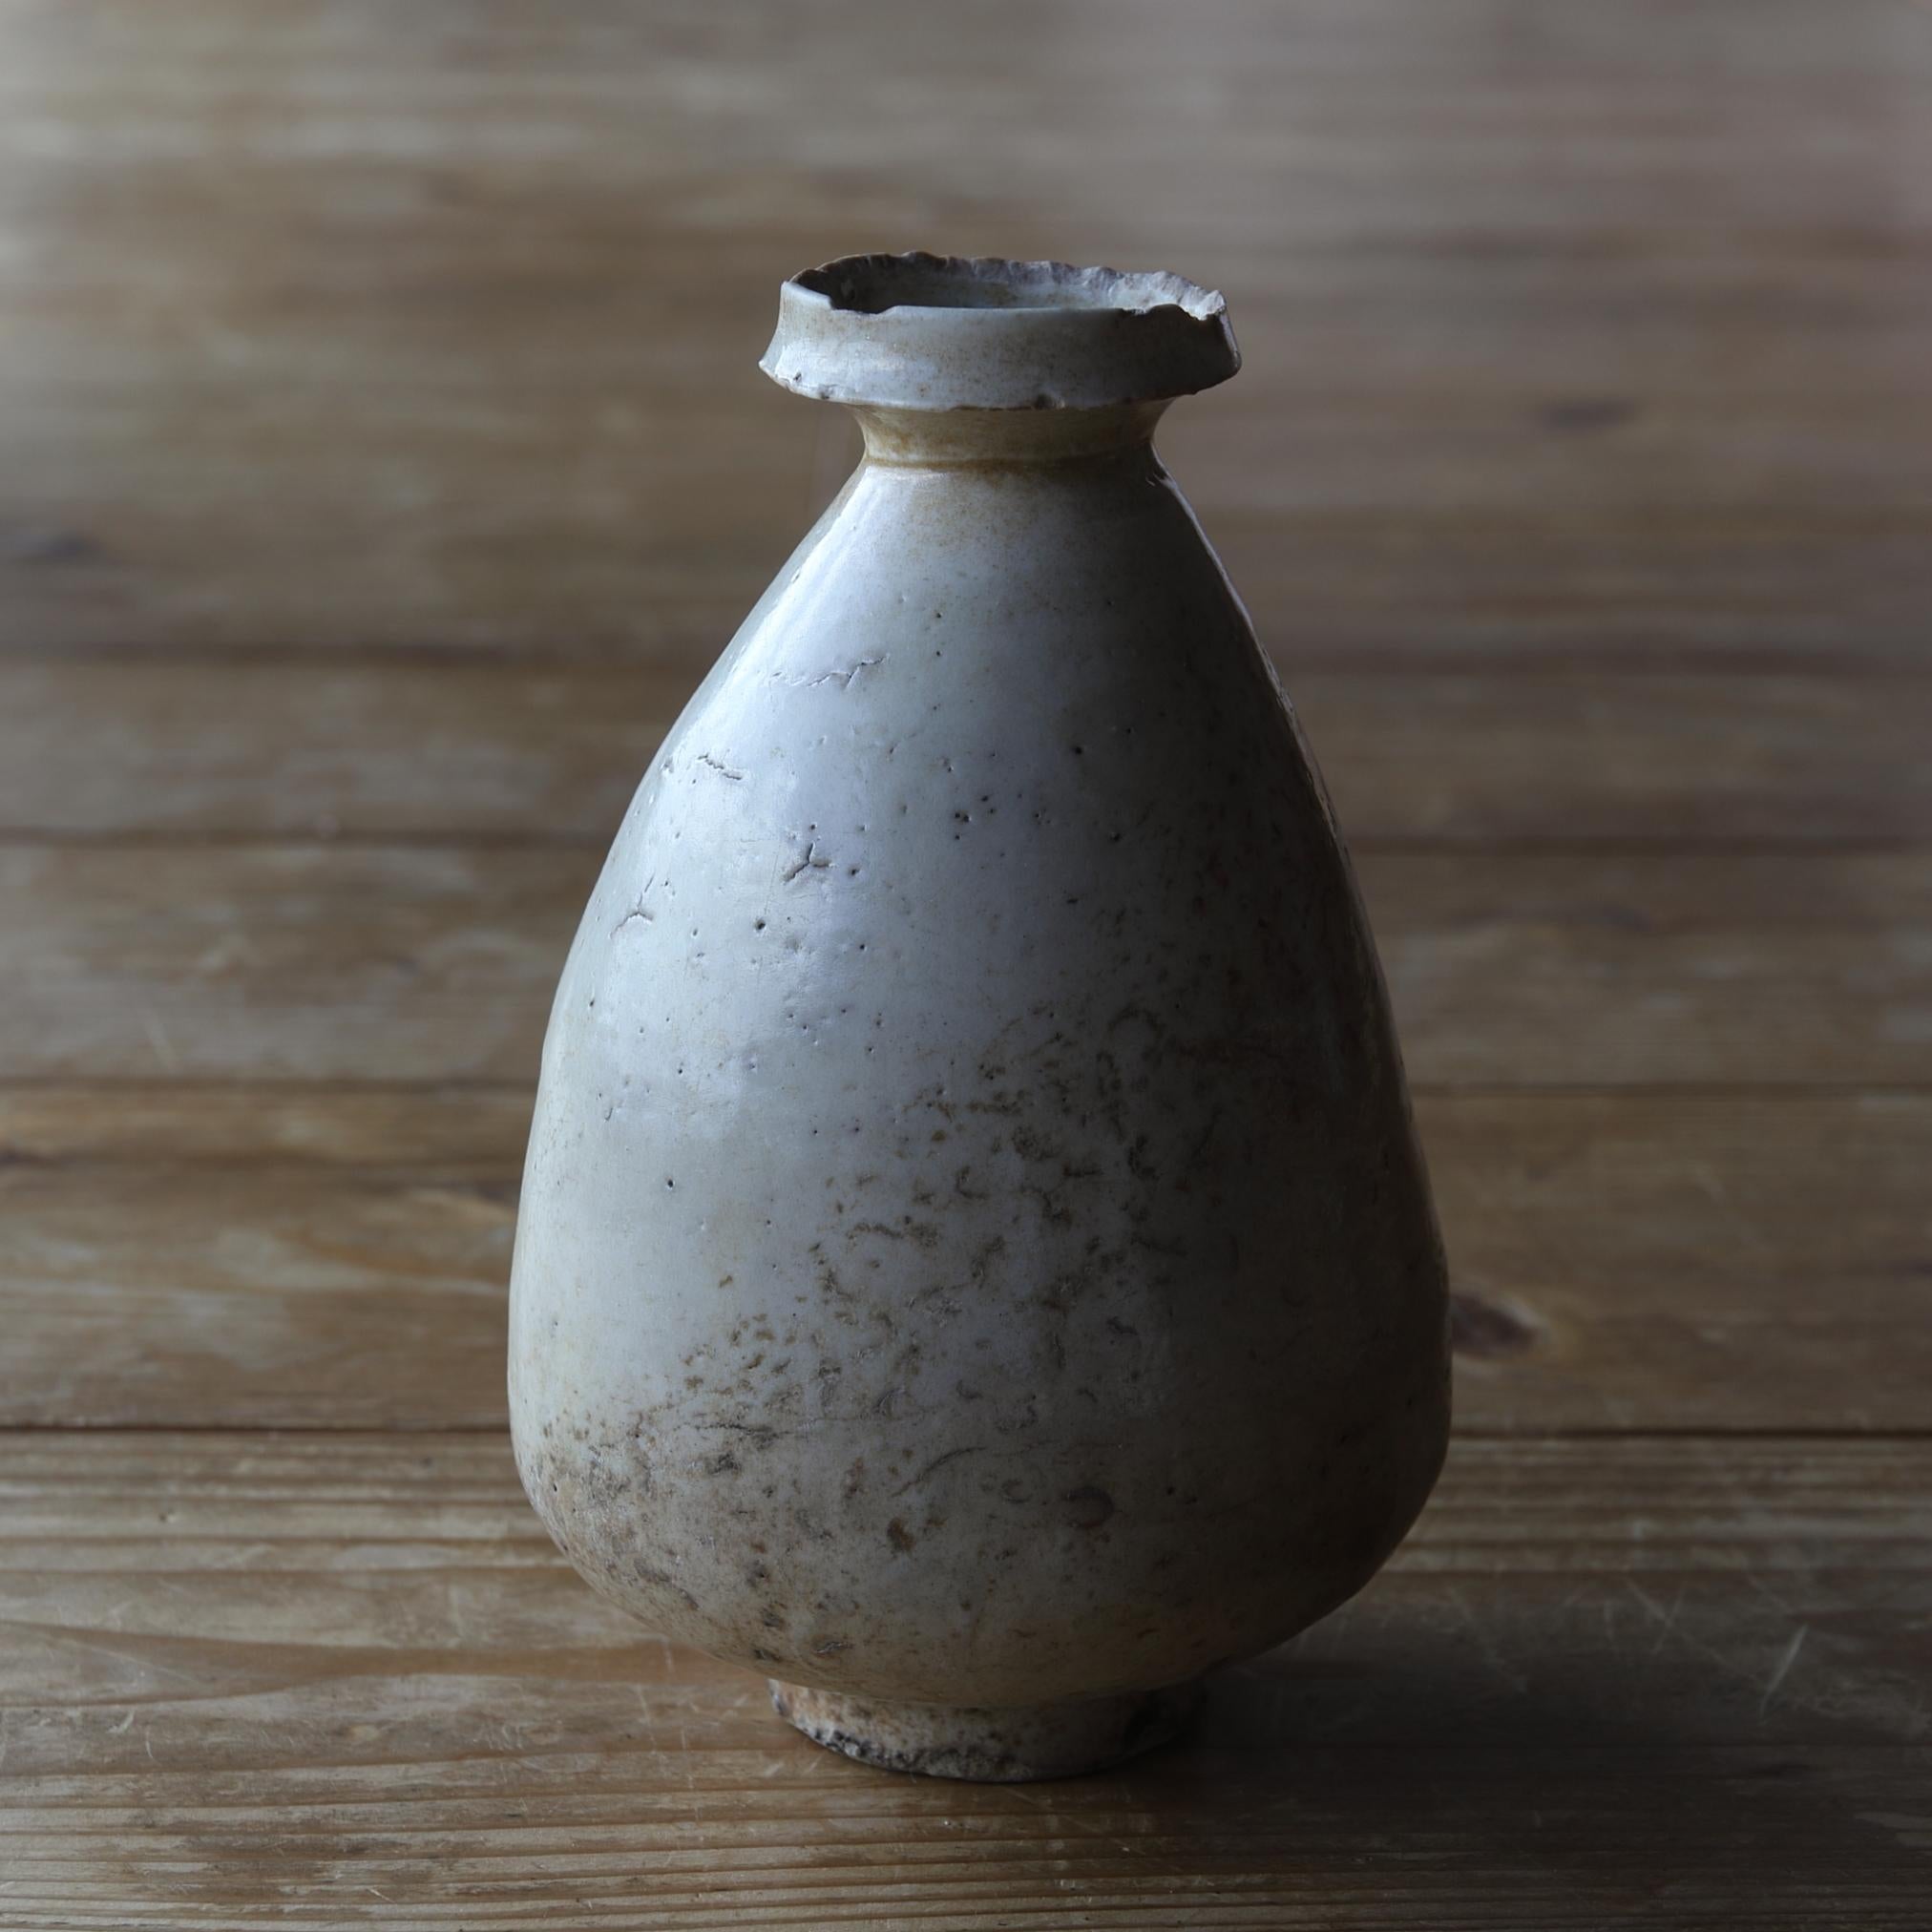 Dieses Produkt ist eine weiße Porzellanflasche aus der Joseon-Dynastie. Damals benutzten die Menschen solche Flaschen, um aus Altöl Seife herzustellen.

Mit der Zeit ist das Porzellan ausgefranst und hat sich wieder aufgerollt, und der